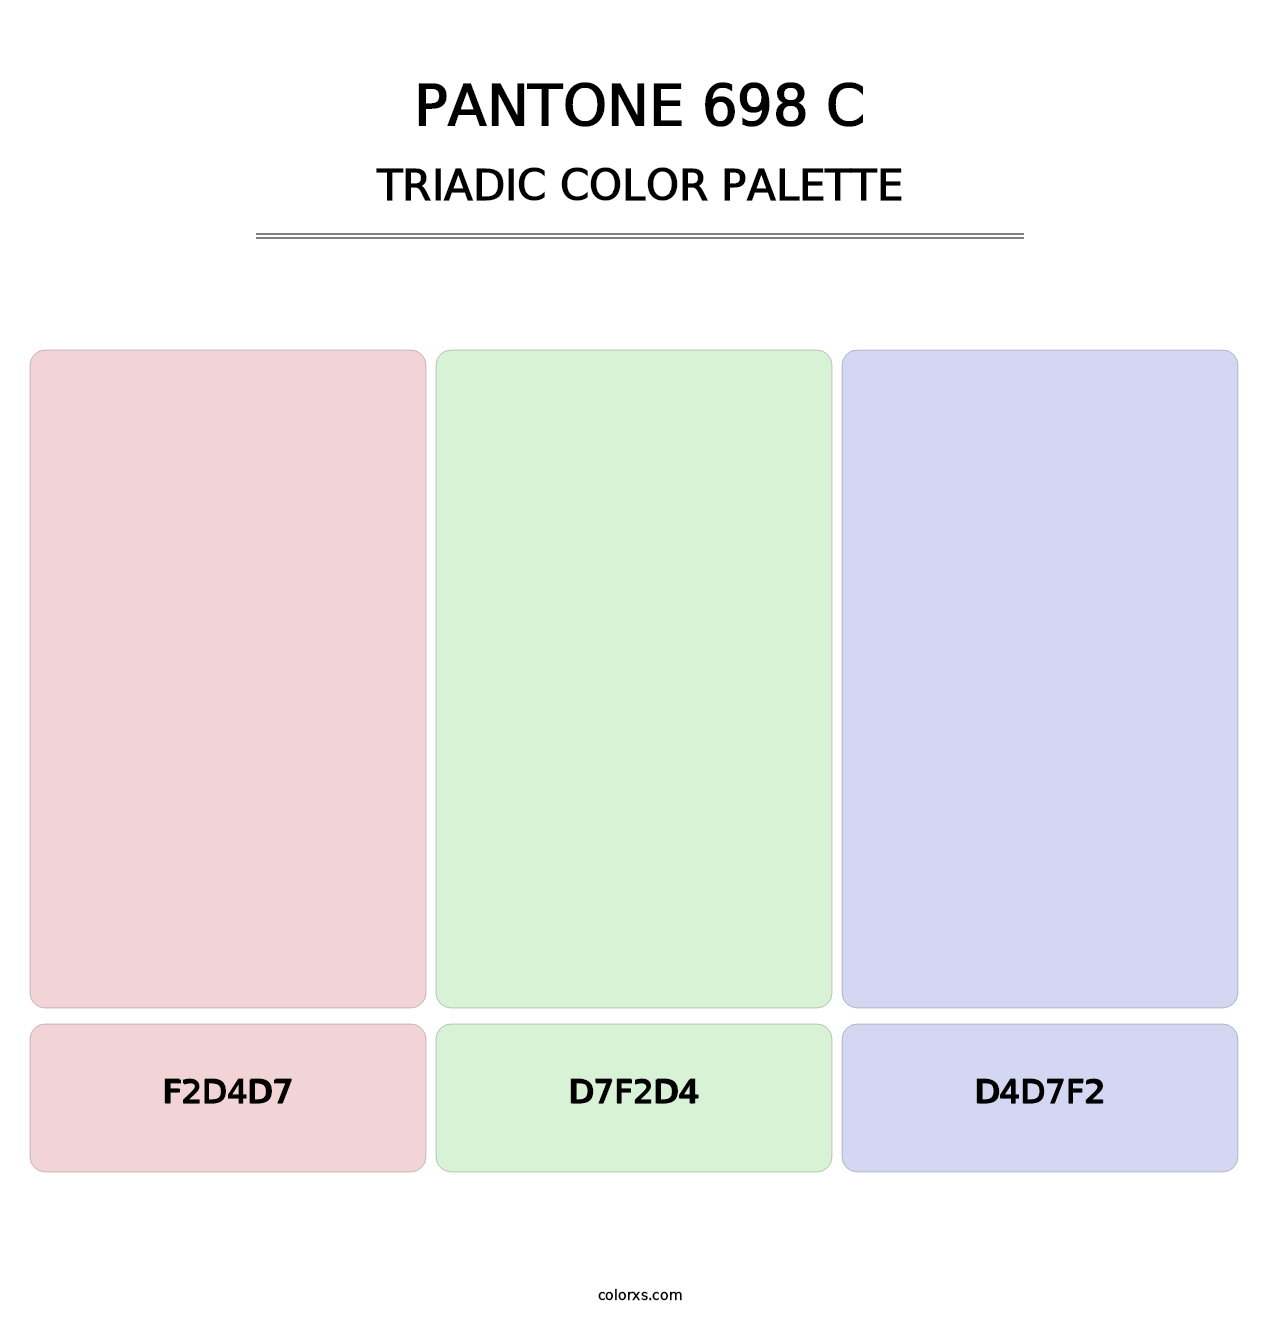 PANTONE 698 C - Triadic Color Palette